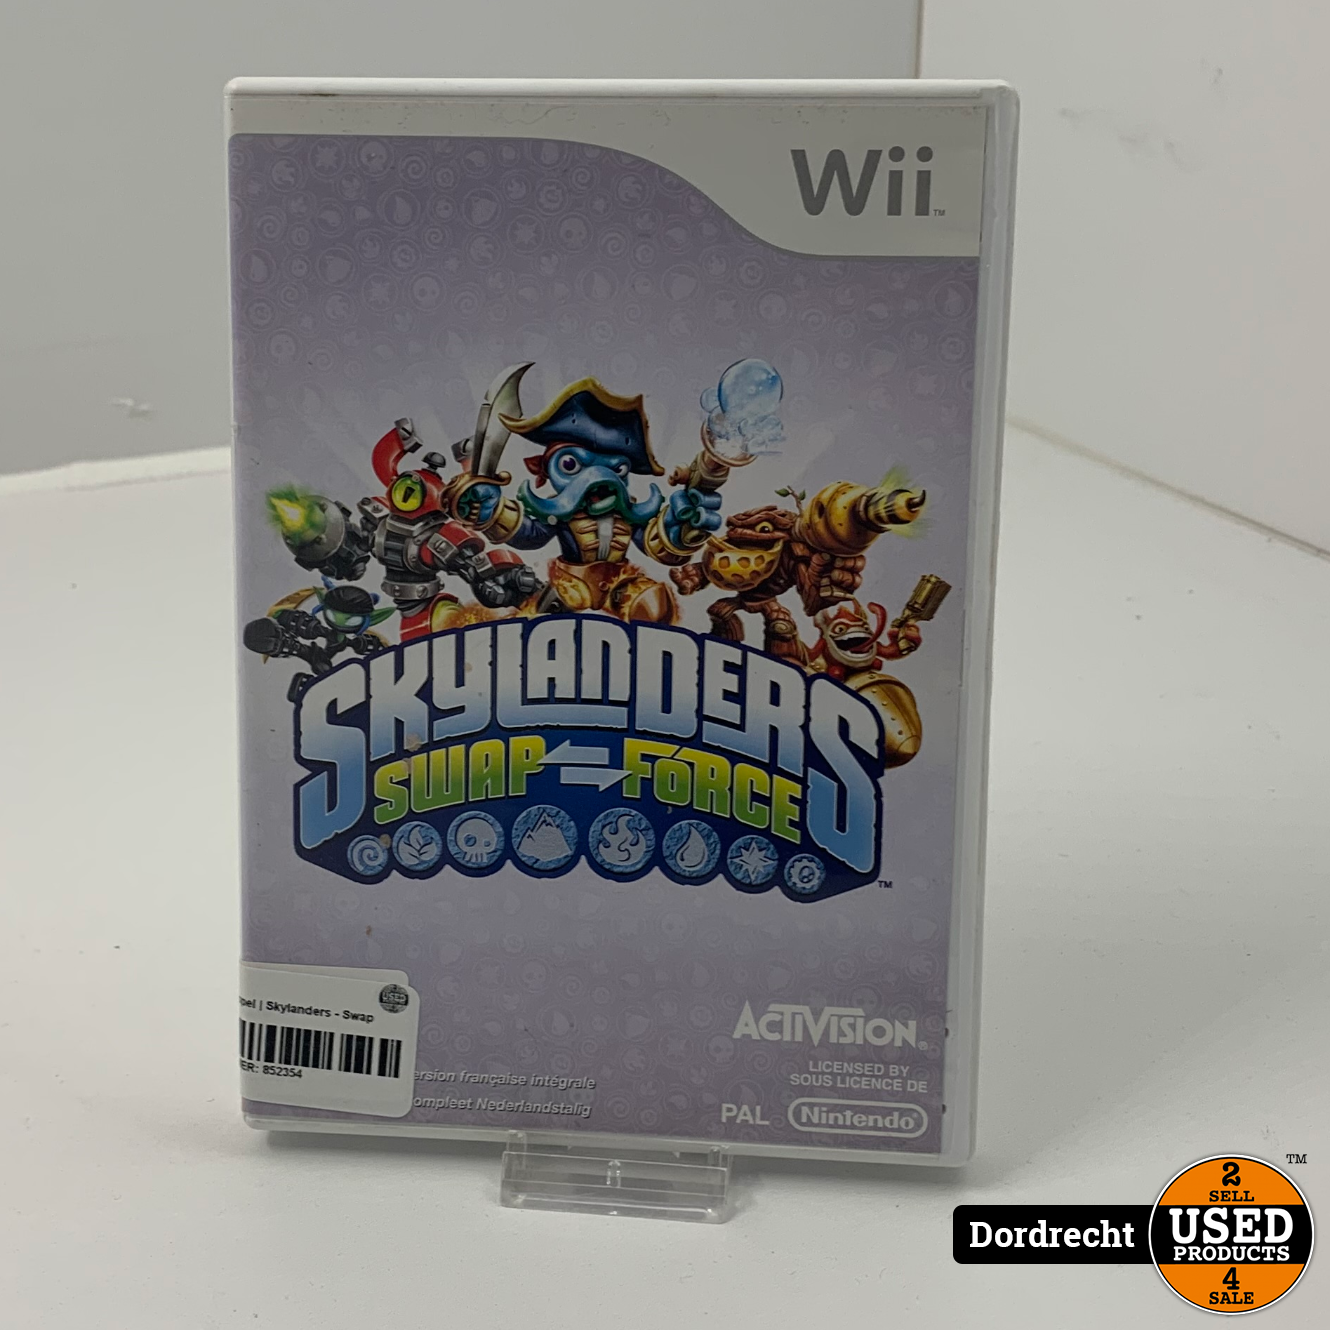 Nintendo Wii Skylanders - Swap Force - Used Products